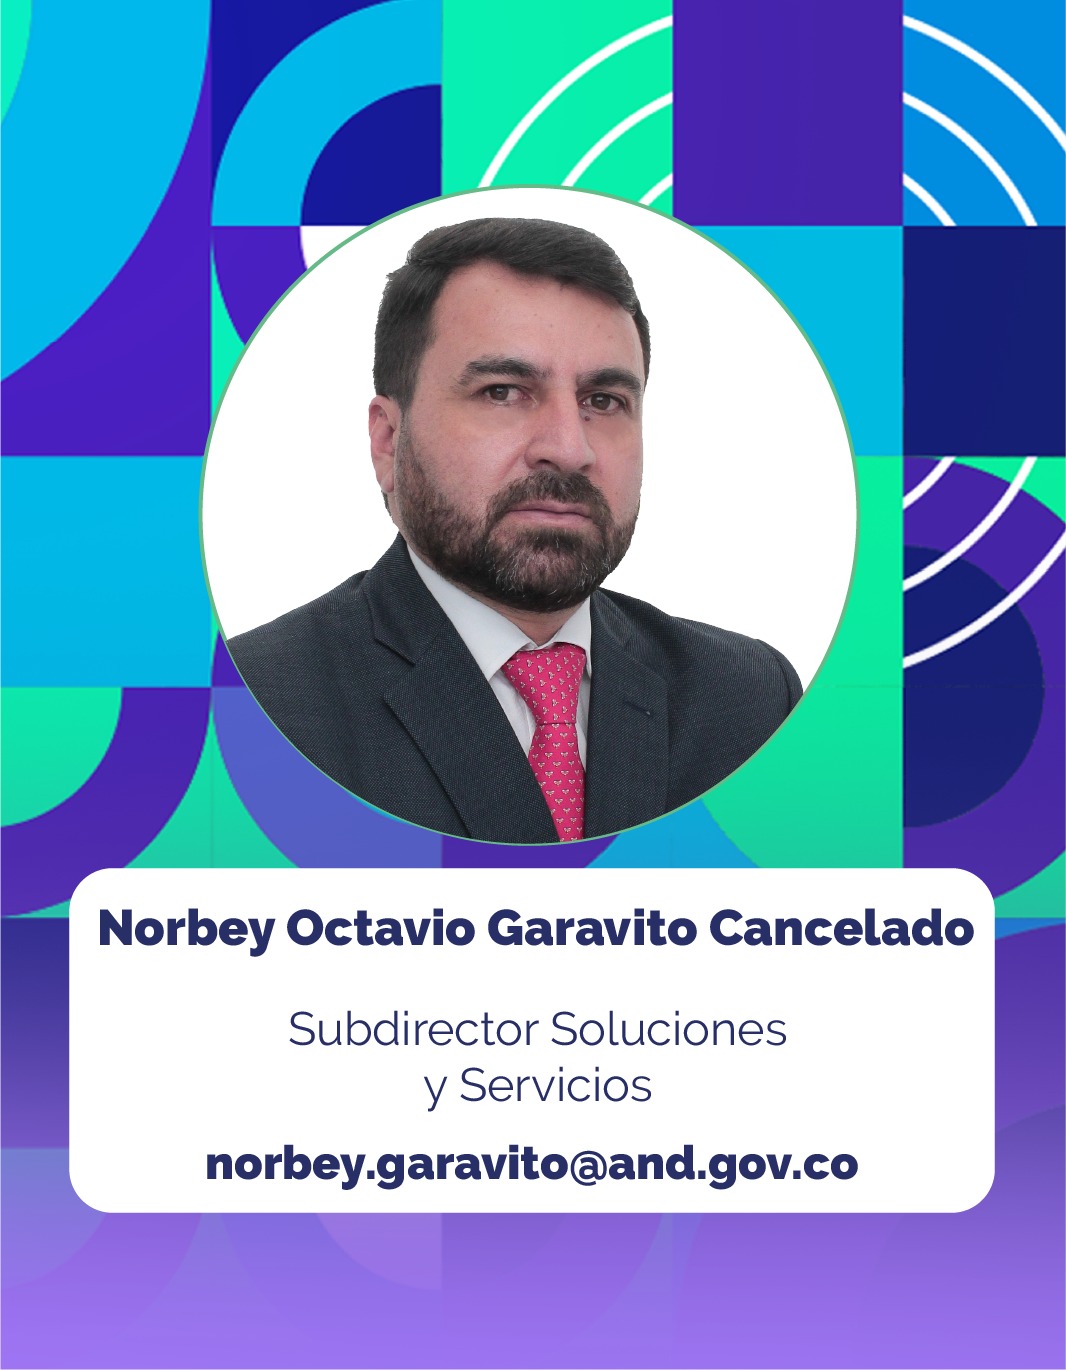 Foto de Norbey Octavio Garavito Cancelado, Subdirector Soluciones y Servicios de la Corporación Agencia Nacional de Gobierno Digital - AND